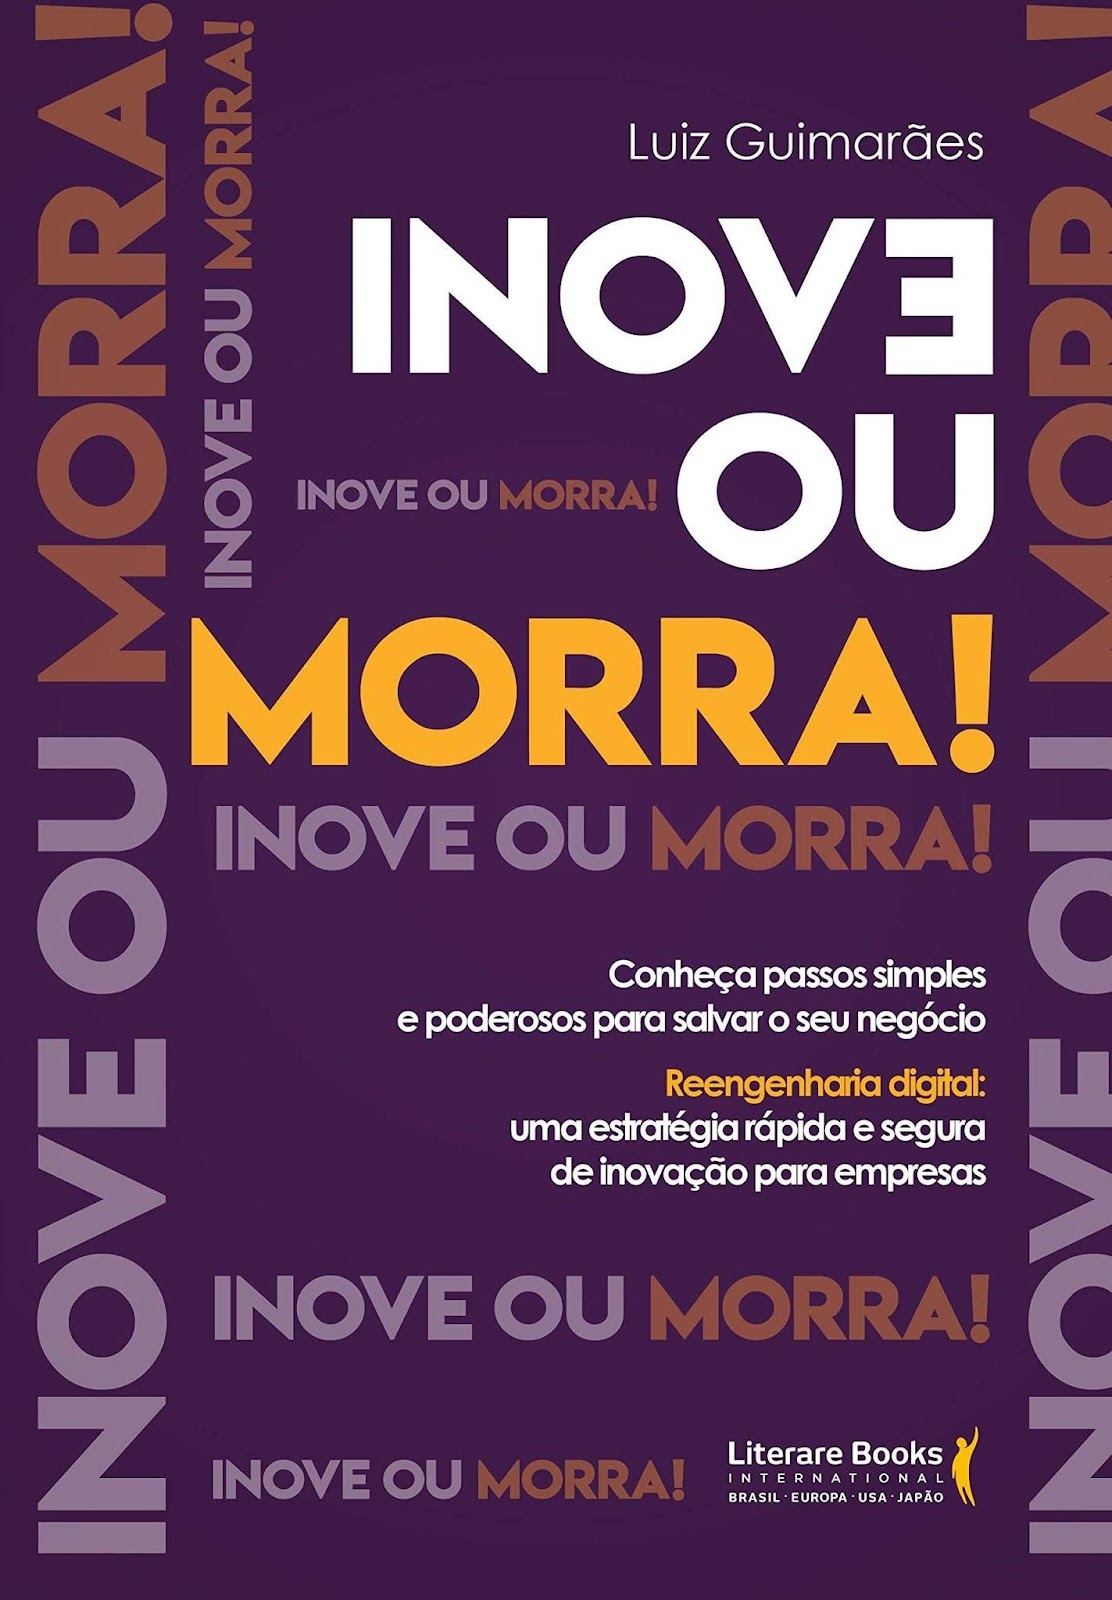 Book 'Inove ou Morra'